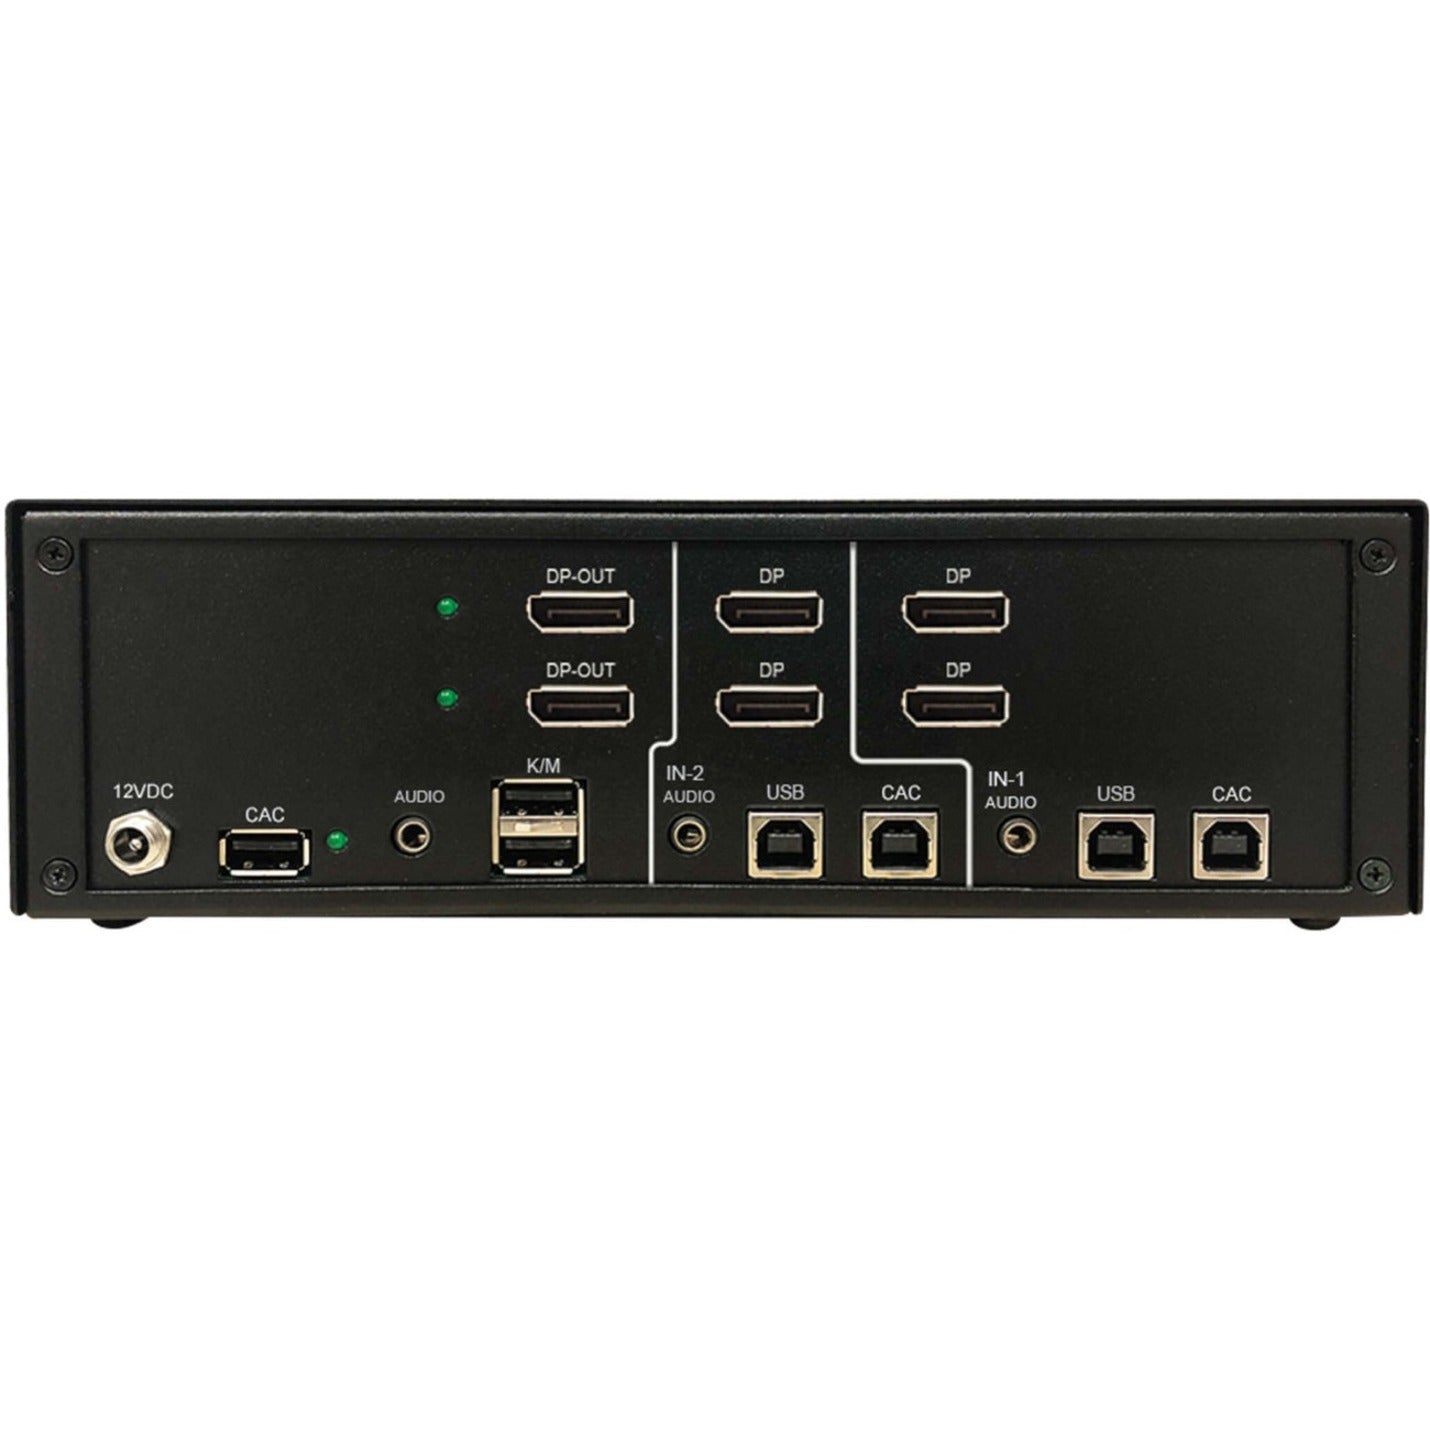 Tripp Lite B002-DP2AC2-N4 Secure KVM Switch 2-Port Dual-Head DisplayPort 4K, NIAP PP4.0 TAA